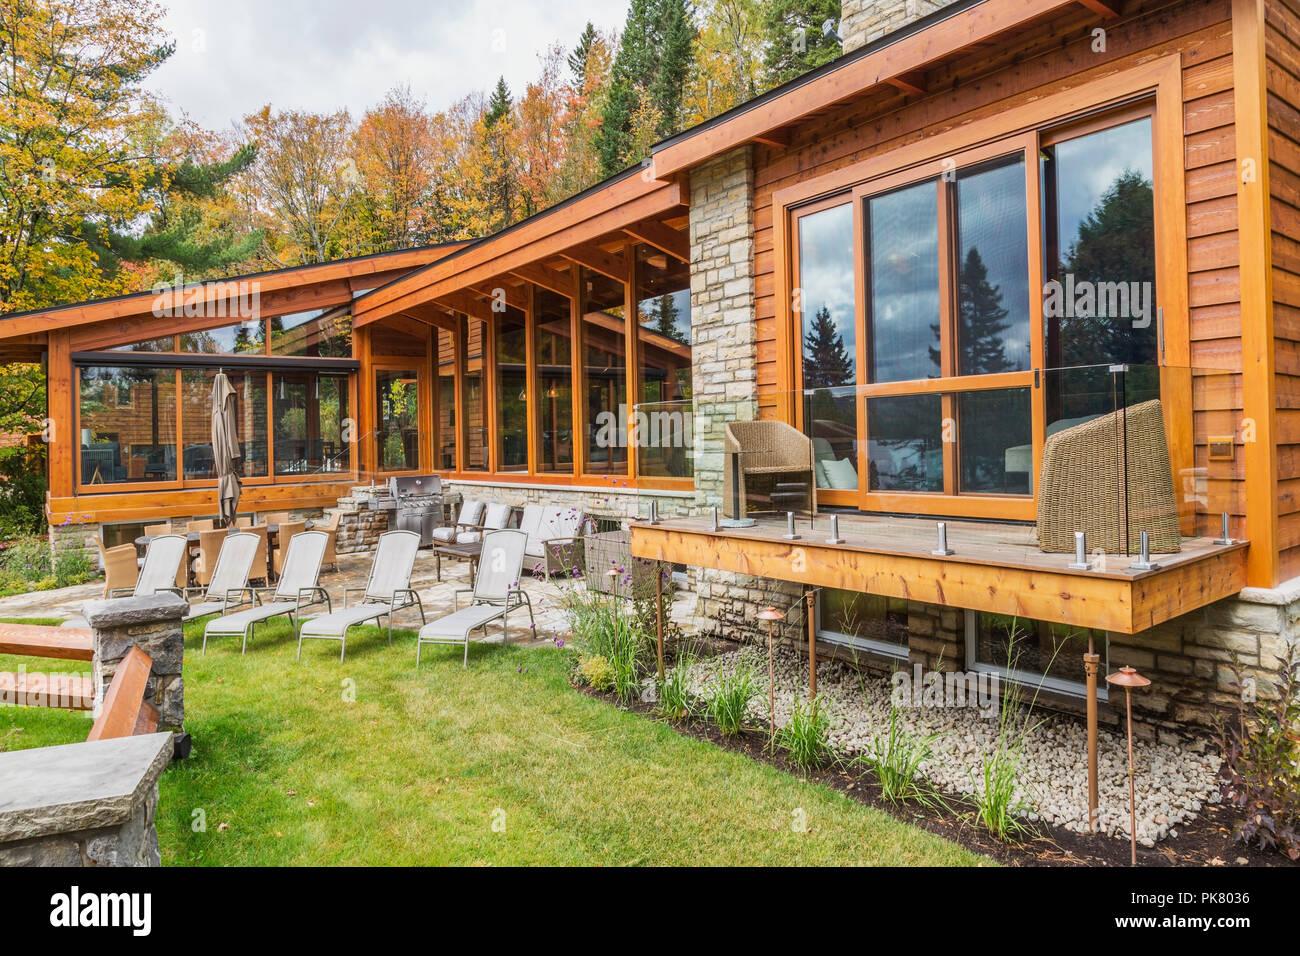 Vue arrière du cèdre et du bois teinté de luxe maison en bois avec des fenêtres panoramiques, terrasse et patio en pierre naturelle en automne, Québec Banque D'Images